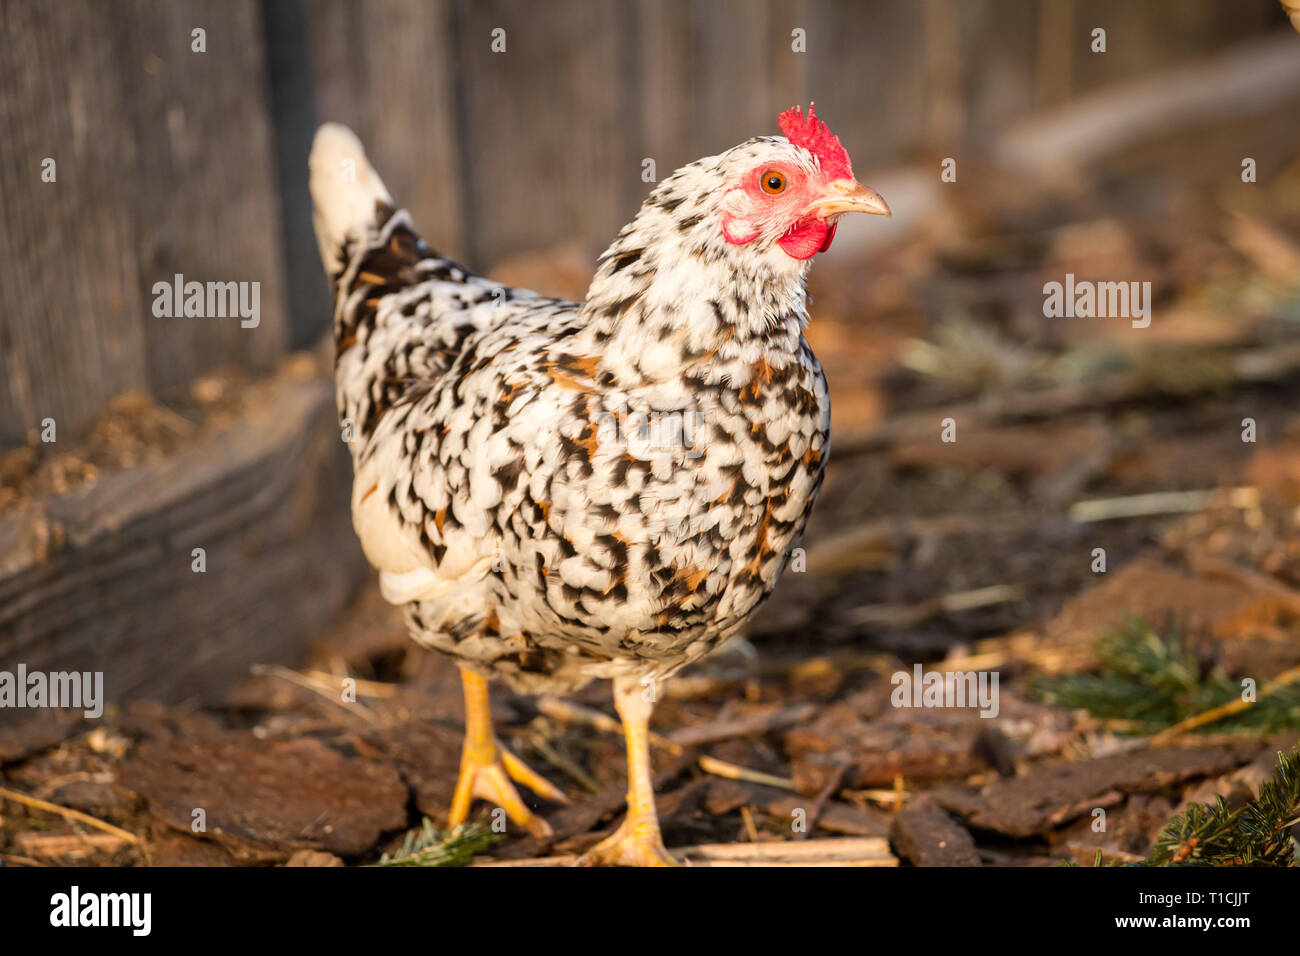 Stoapiperl/Steinhendl (Gallus gallus domesticus), einer vom Aussterben bedrohten Rasse Huhn aus Österreich Stockfoto